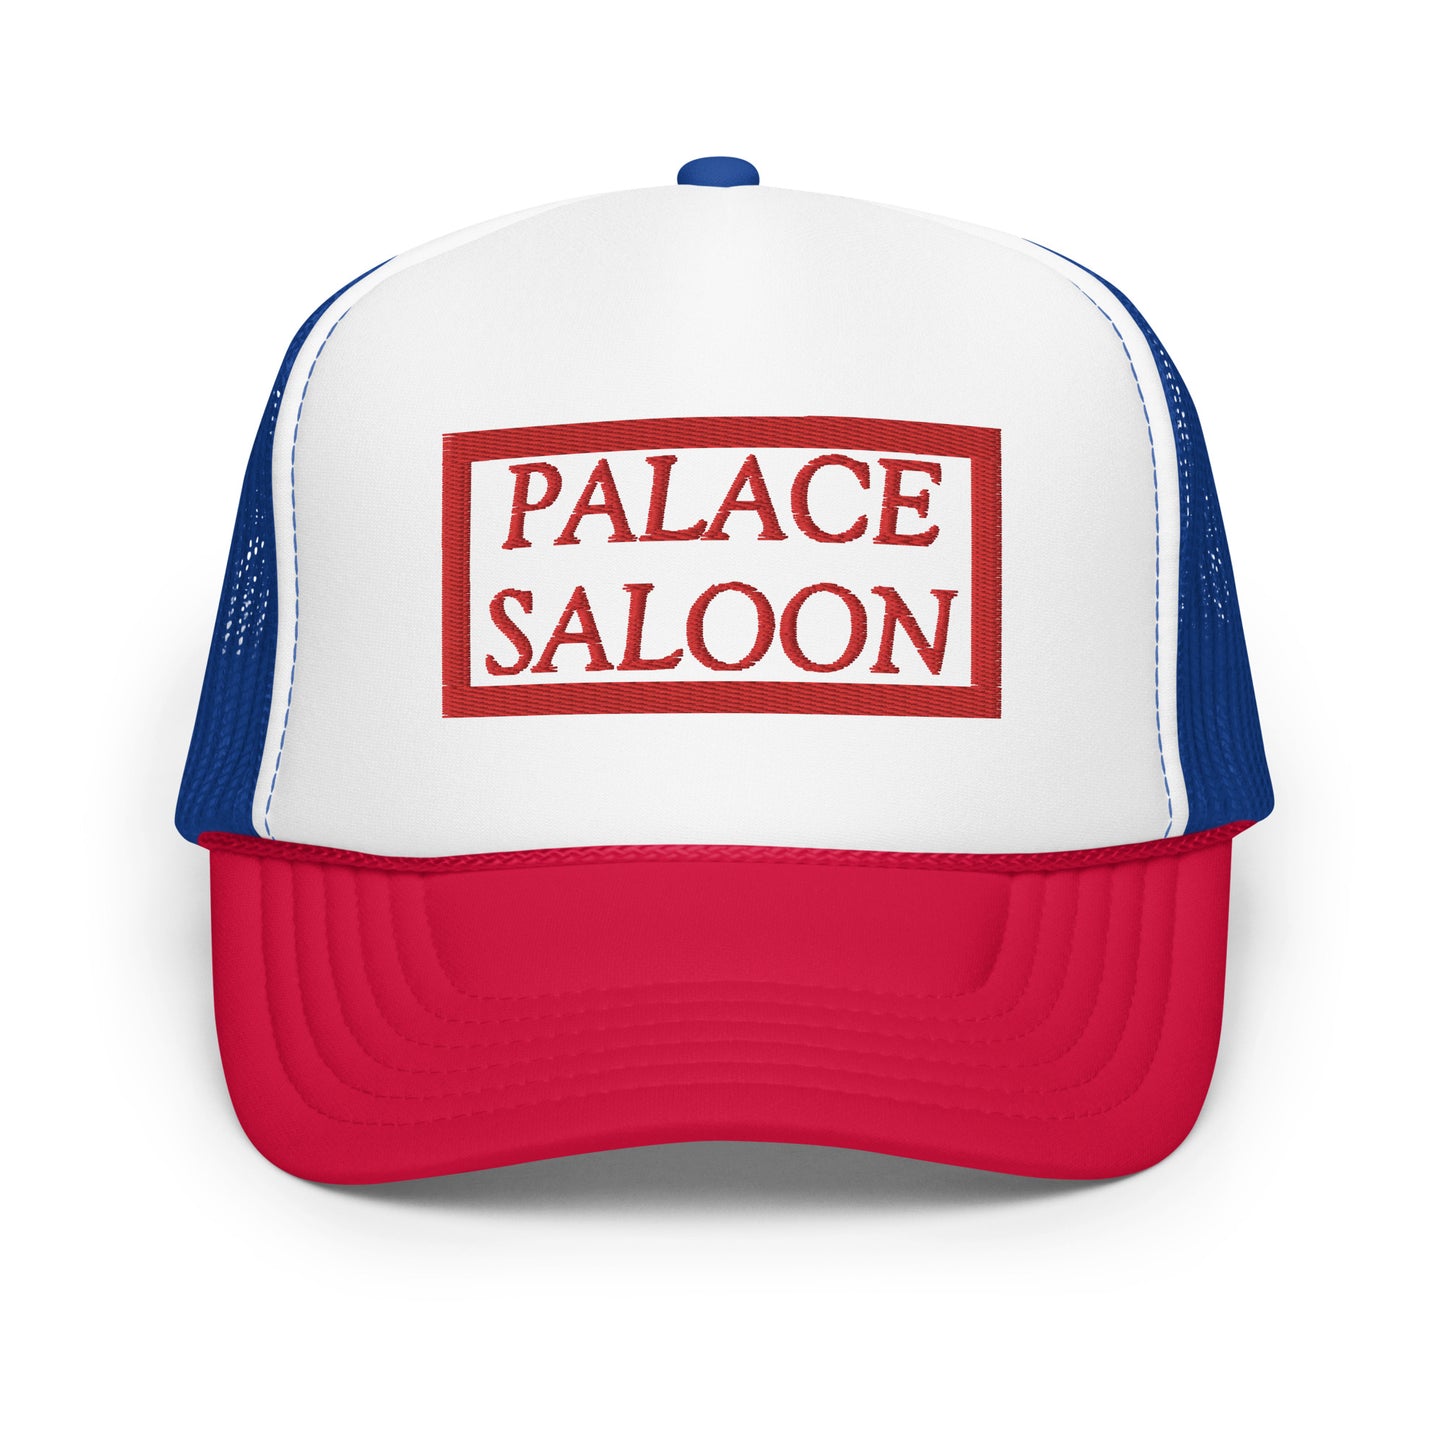 Palace Saloon Foam trucker hat